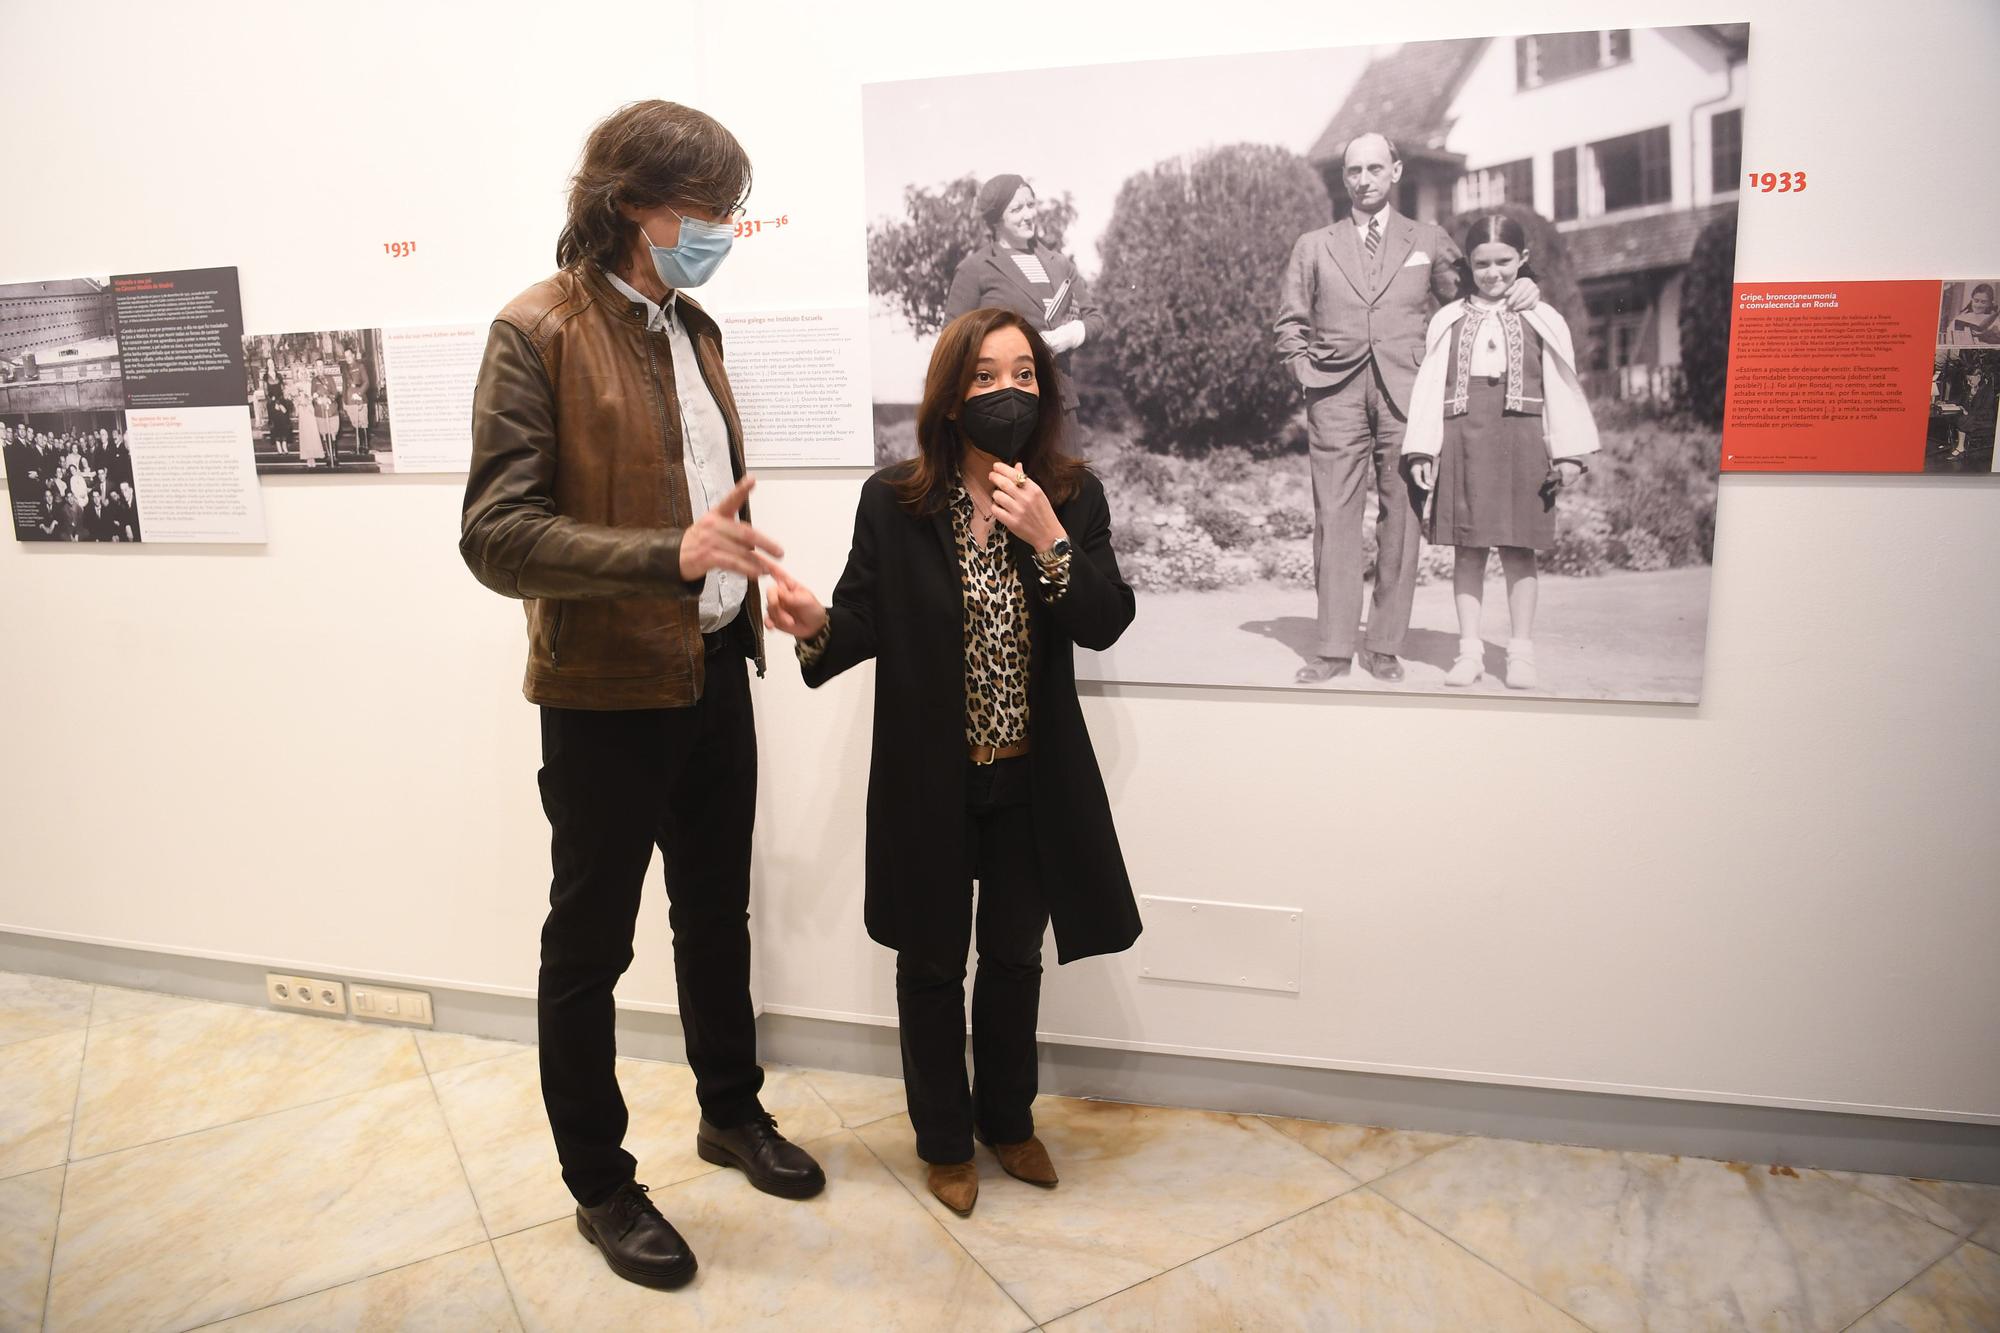 La Casa Museo Casares Quiroga presenta una exposicións sobre María Casares